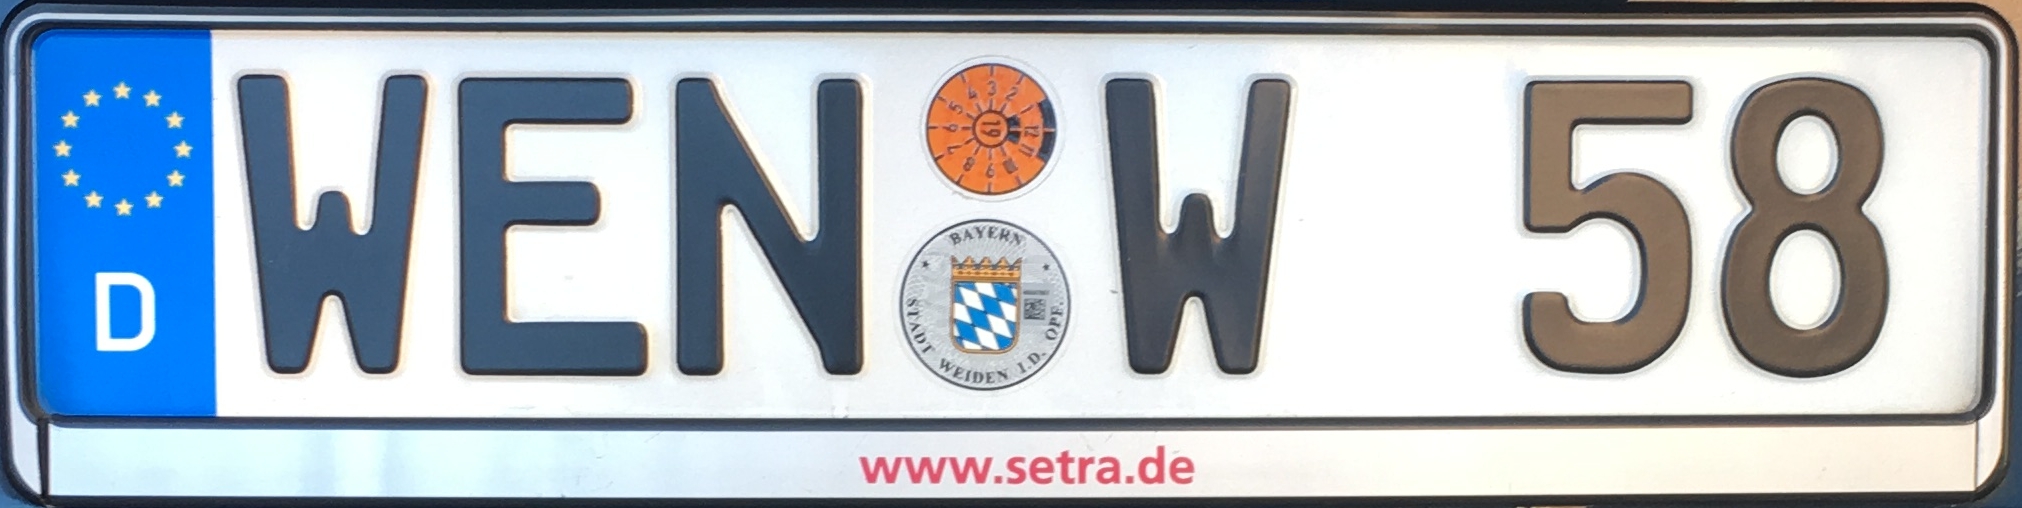 Registrační značka Německo - WEN - Weiden in der Oberpfalz, foto: www.podalnici.cz